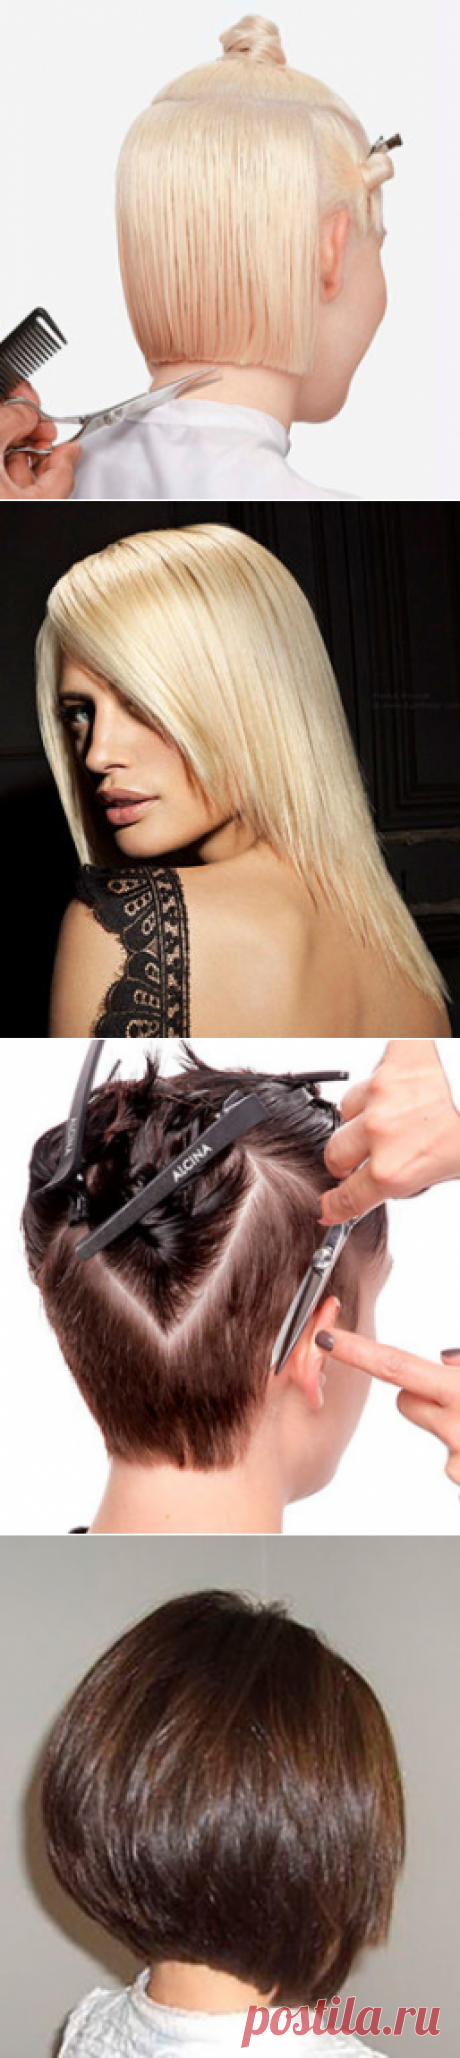 Виды окантовки волос на шее. Окантовать затылок можно по-разному. Парикмахер выбирает характер оформления исходя из особенностей строения шеи, длины и уникальности роста волос.